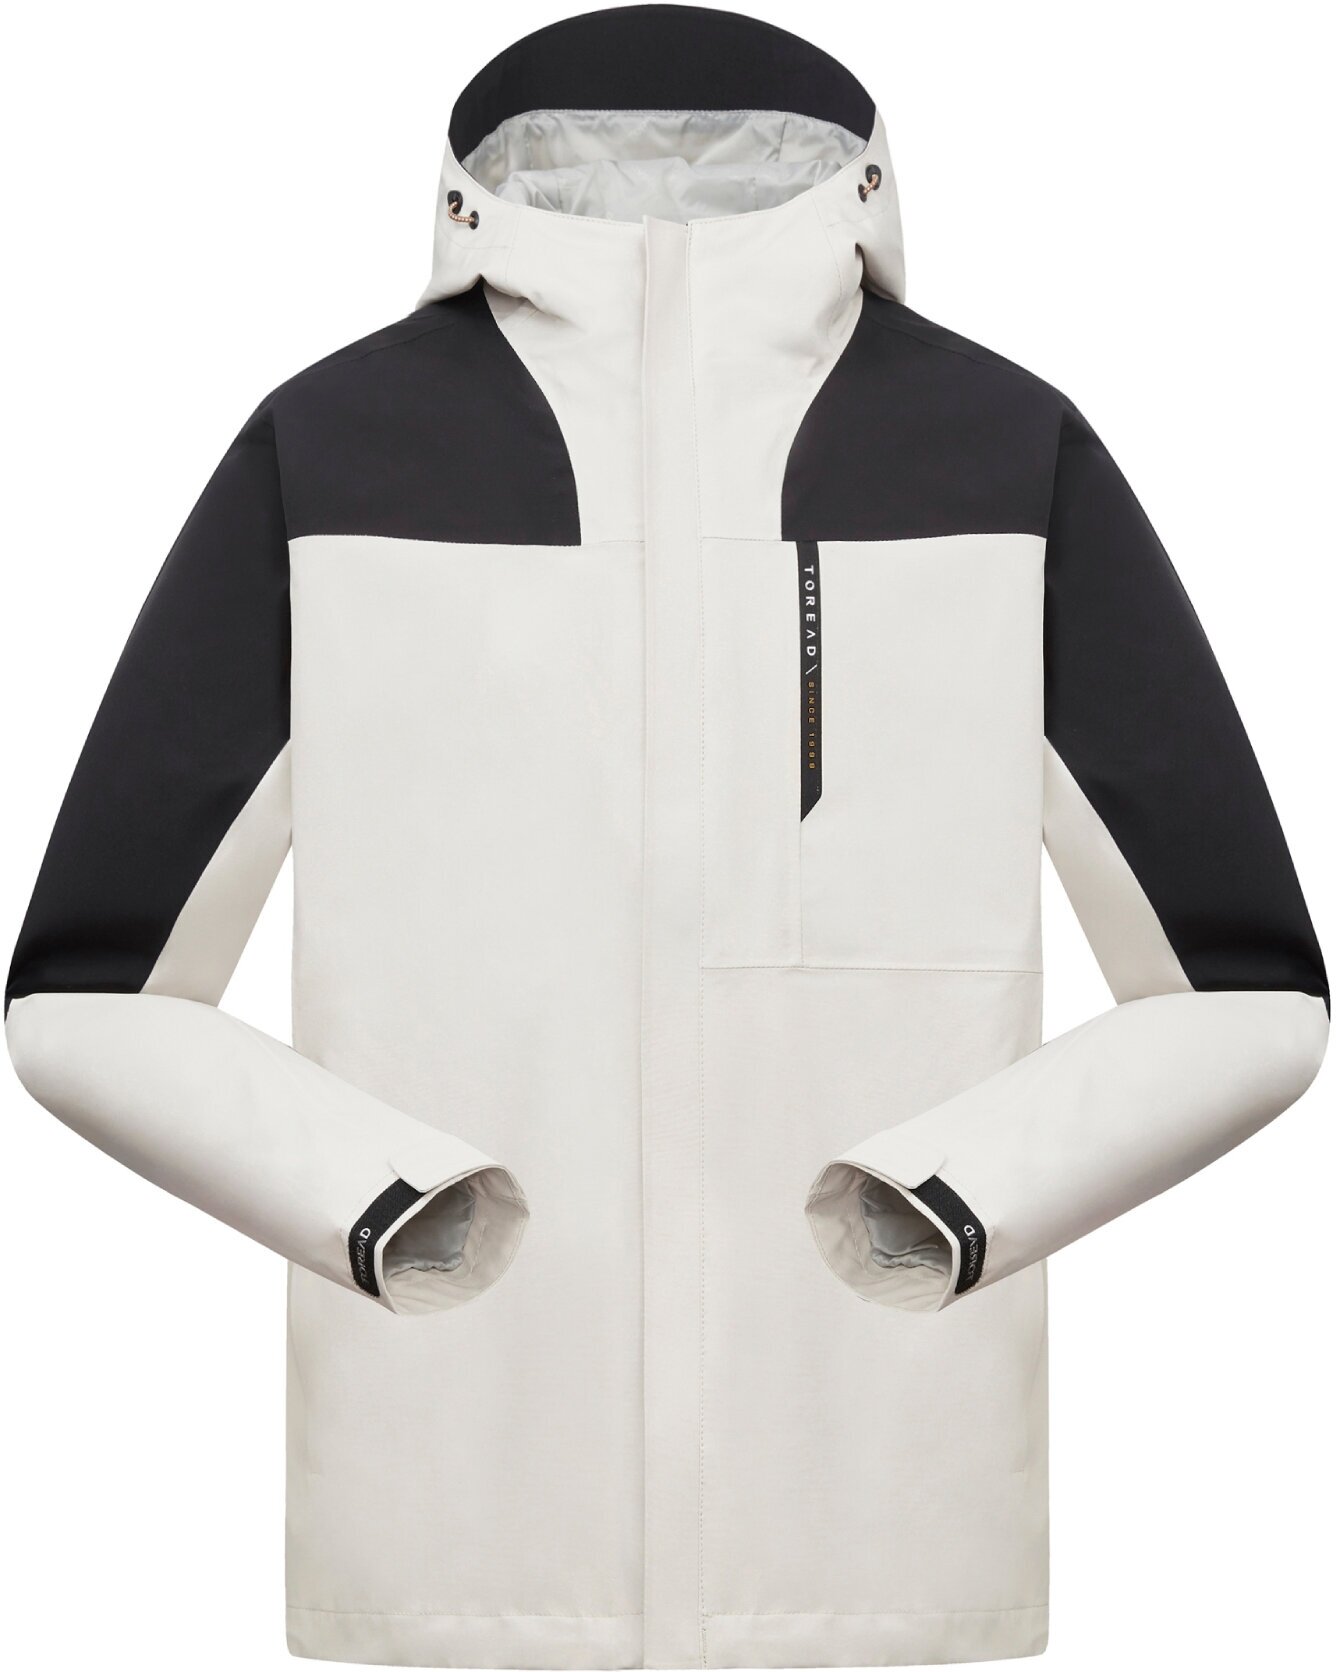 Туристическая куртка TOREAD, средней длины, силуэт прямой, карманы, мембранная, регулируемый капюшон, несъемный капюшон, регулируемый край, водонепроницаемая